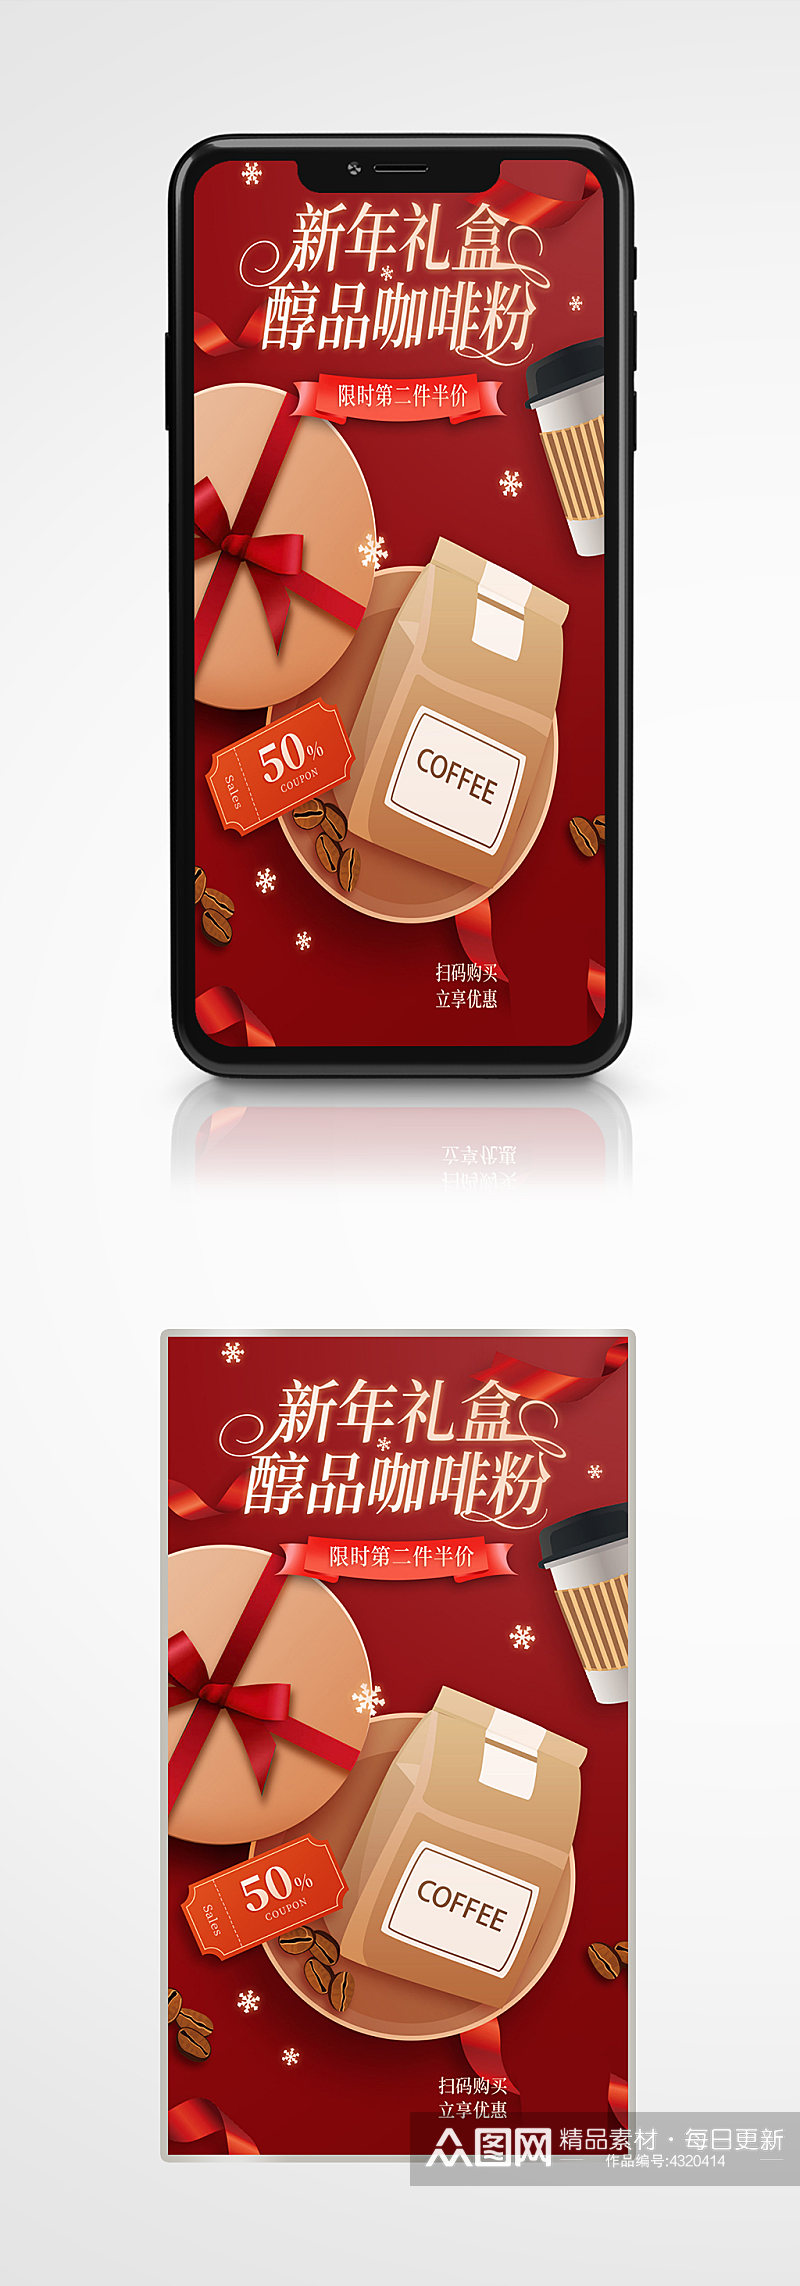 咖啡礼盒节日活动促销手机海报礼包红色素材